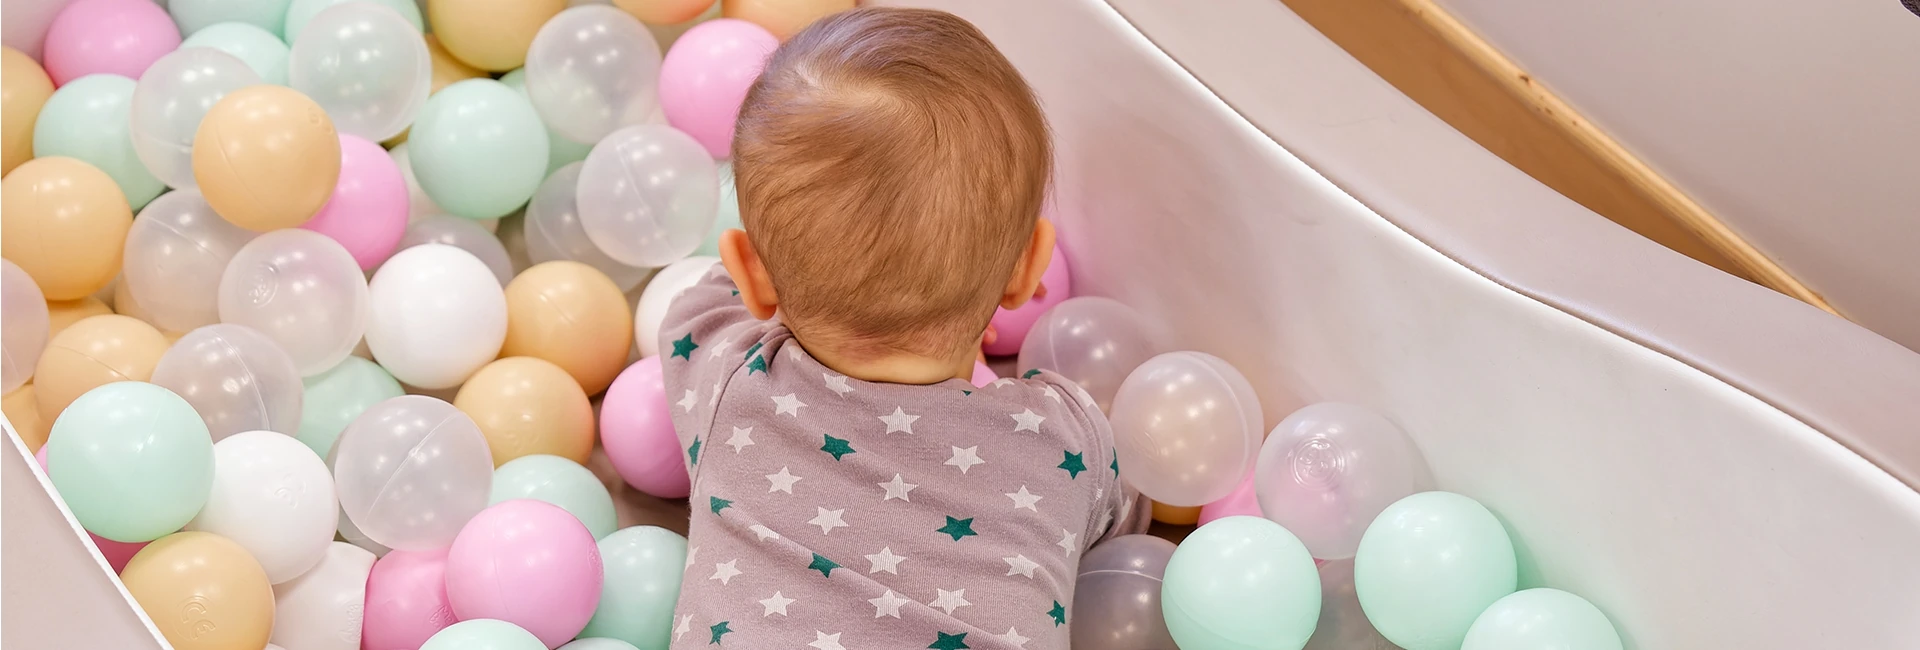 Un bébé joue dans un parc à balles en plastique de couleurs pastel